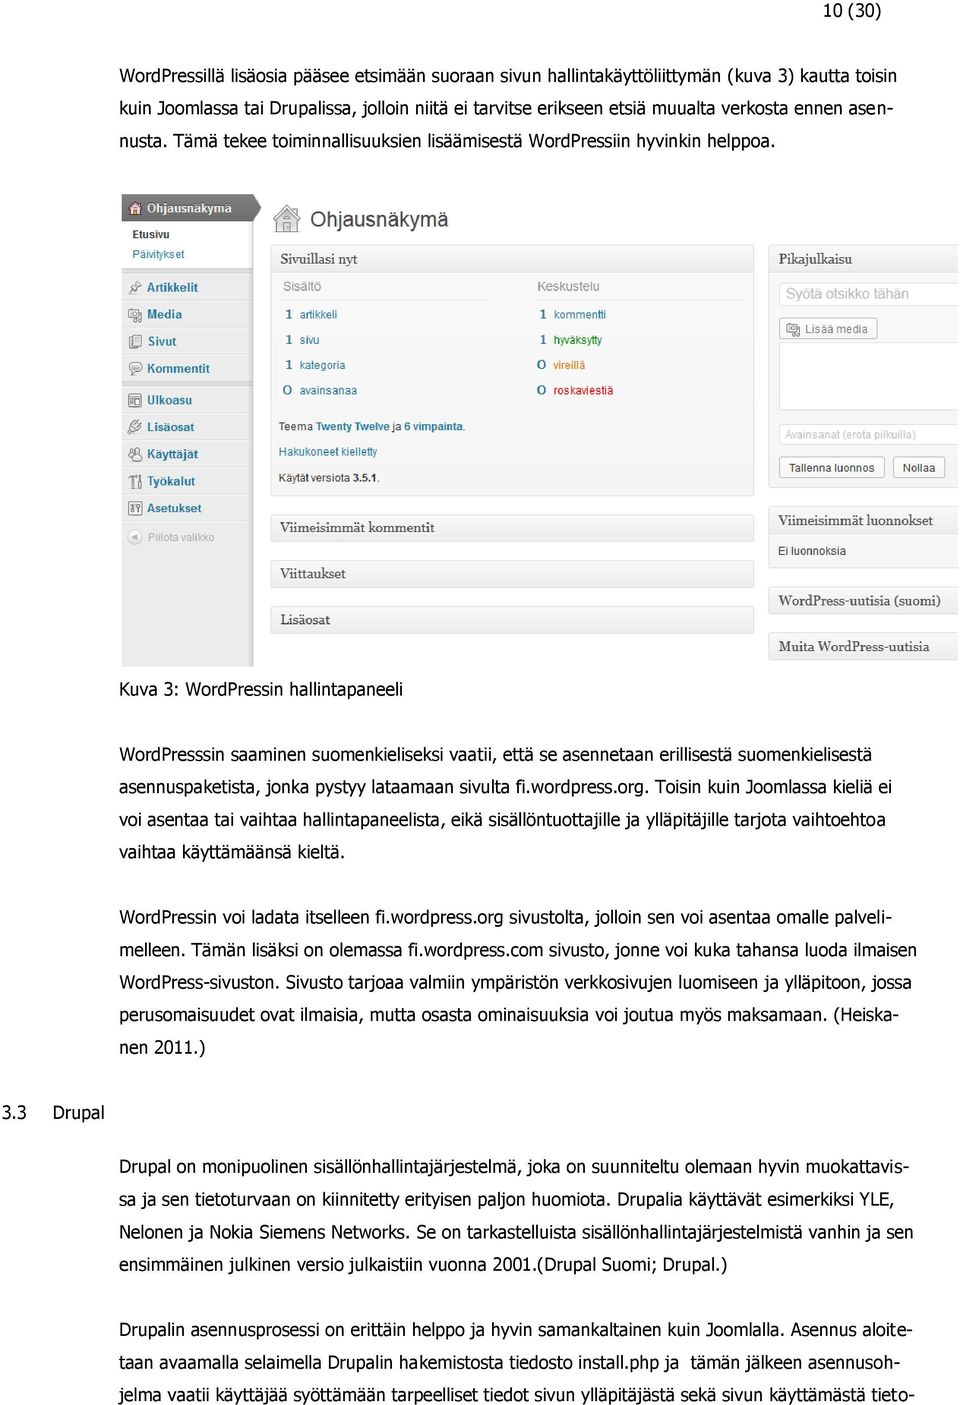 Kuva 3: WordPressin hallintapaneeli WordPresssin saaminen suomenkieliseksi vaatii, että se asennetaan erillisestä suomenkielisestä asennuspaketista, jonka pystyy lataamaan sivulta fi.wordpress.org.